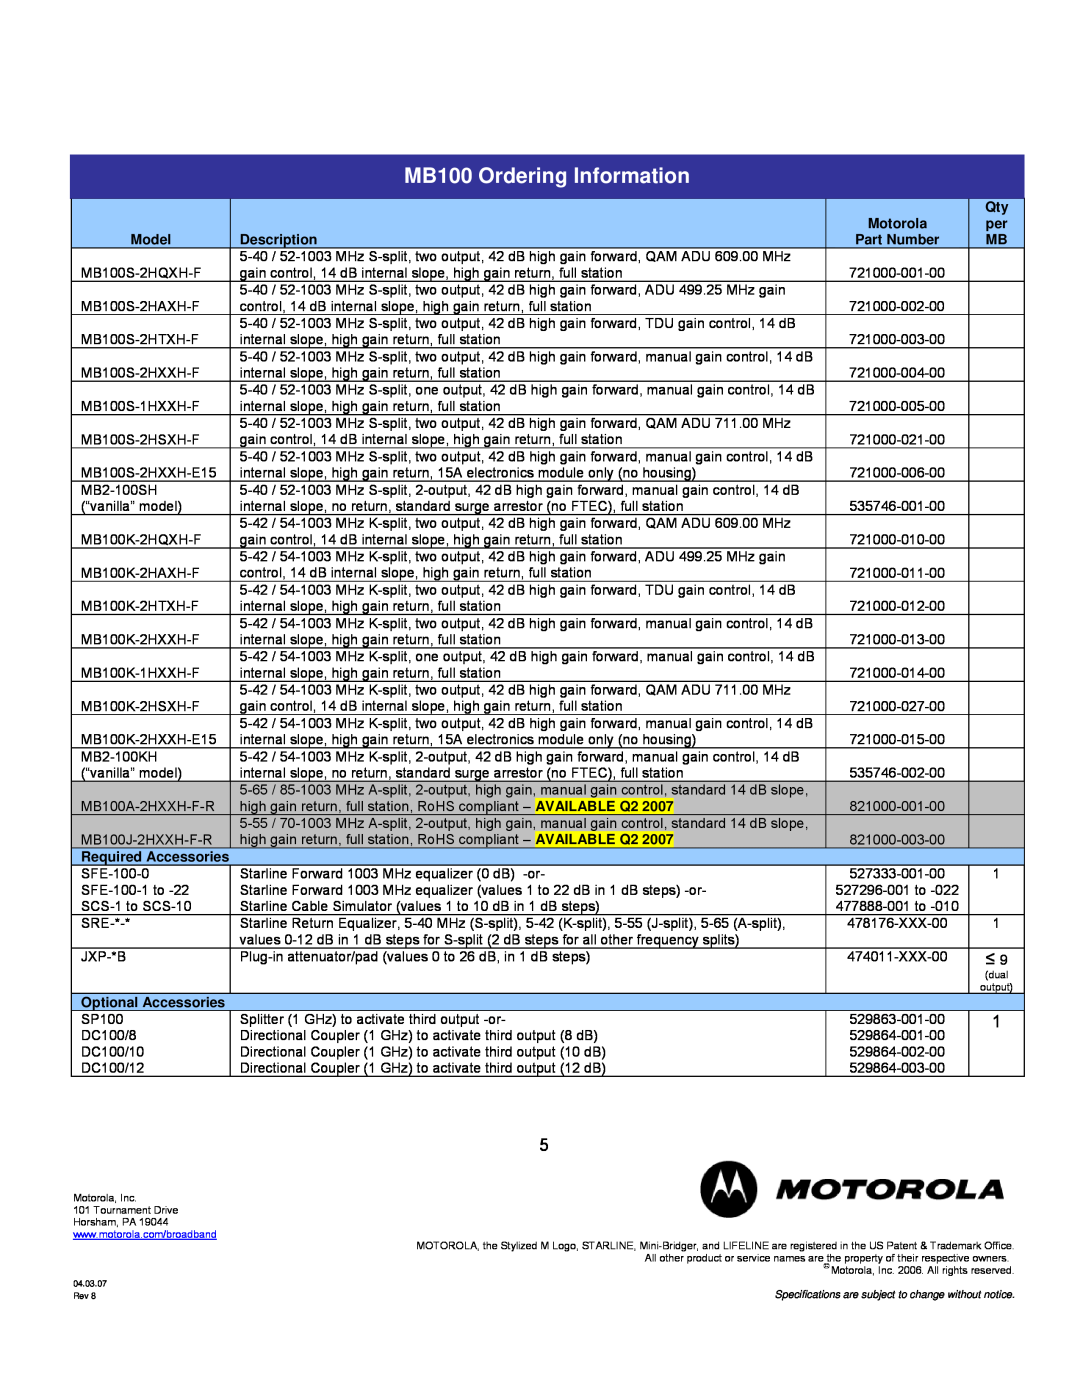 Motorola specifications MB100 Ordering Information, Motorola, Model, Description, Part Number 